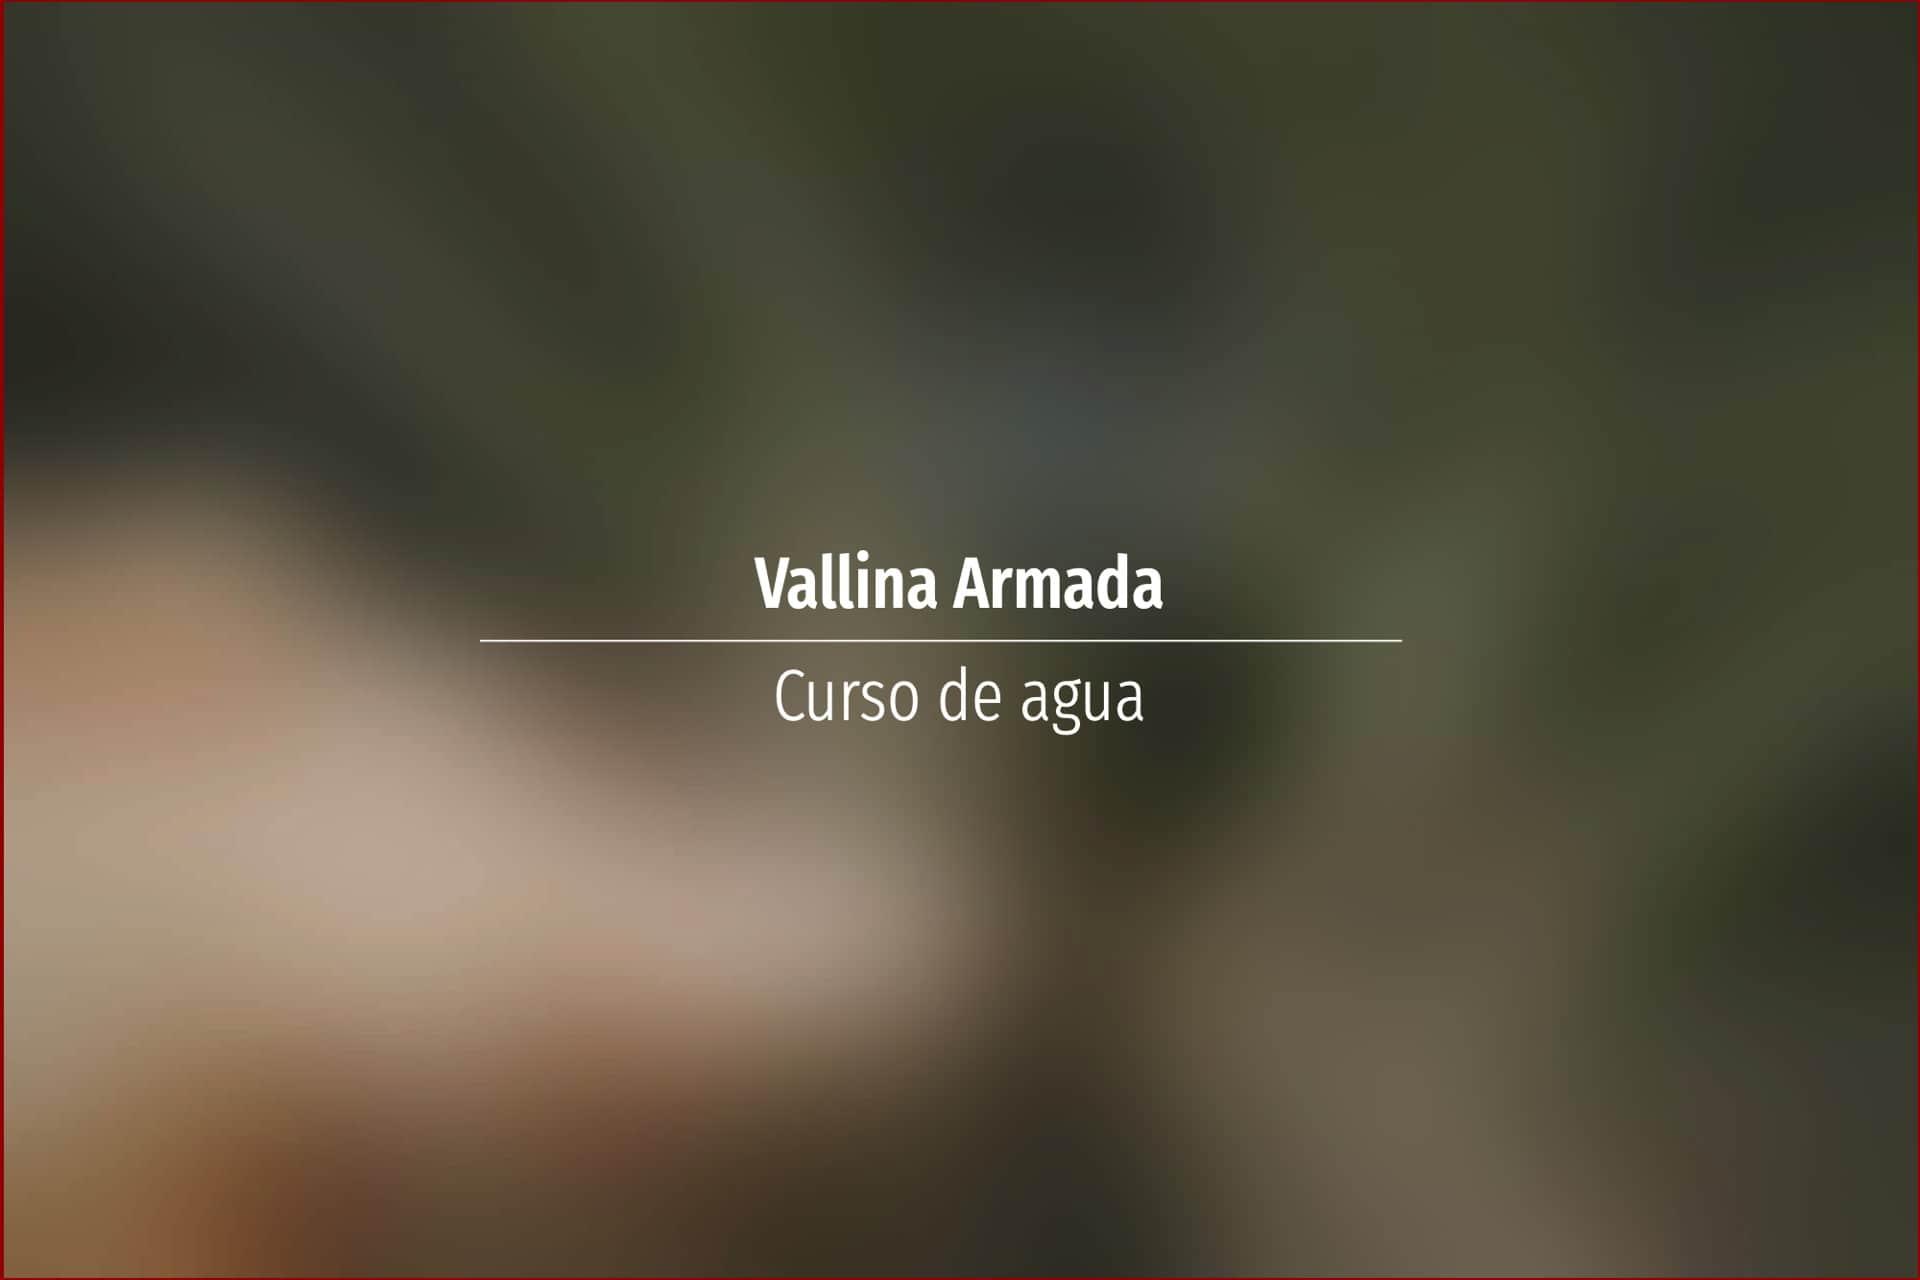 Vallina Armada